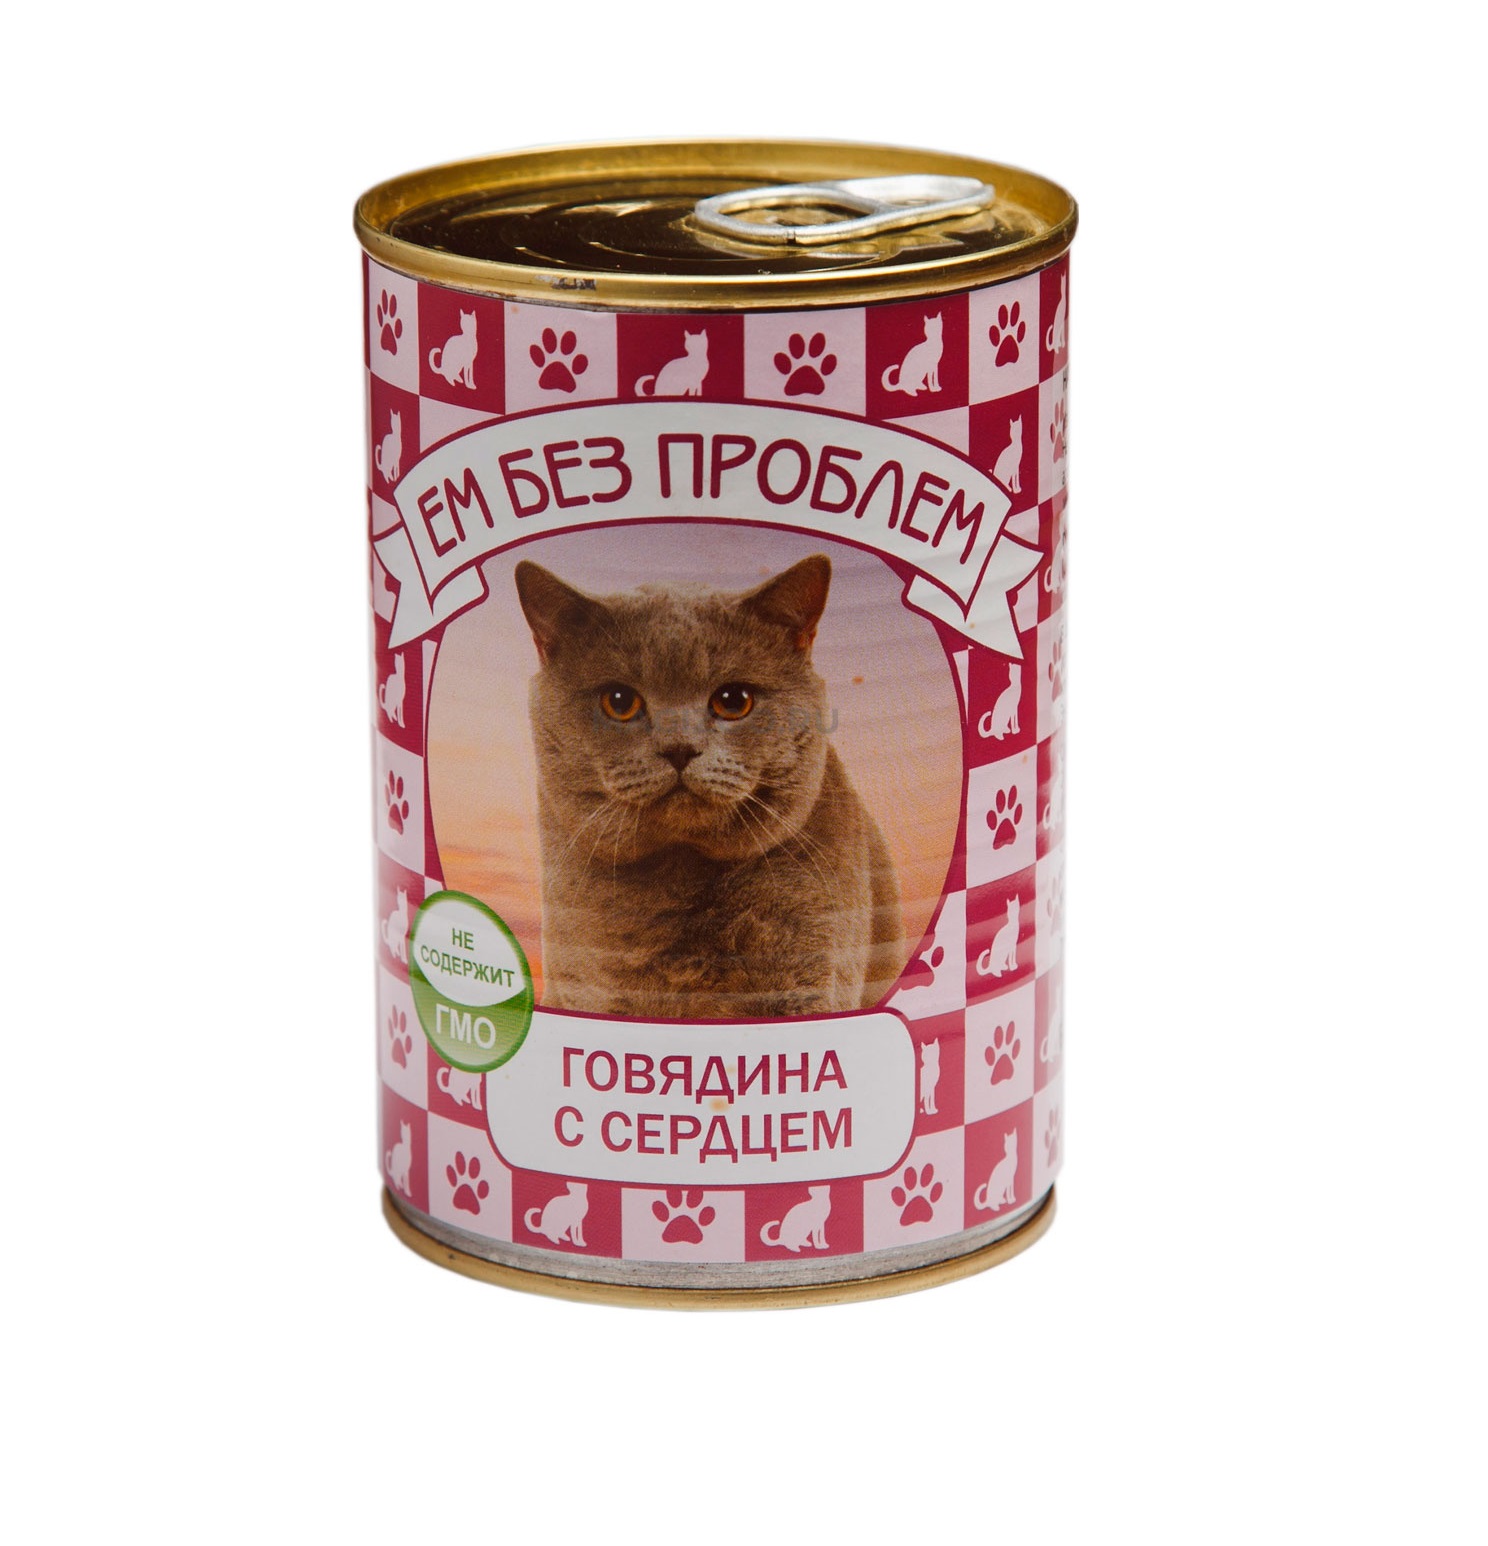 Ем Без Проблем 410гр - Говядина и Сердце, консервы для кошек